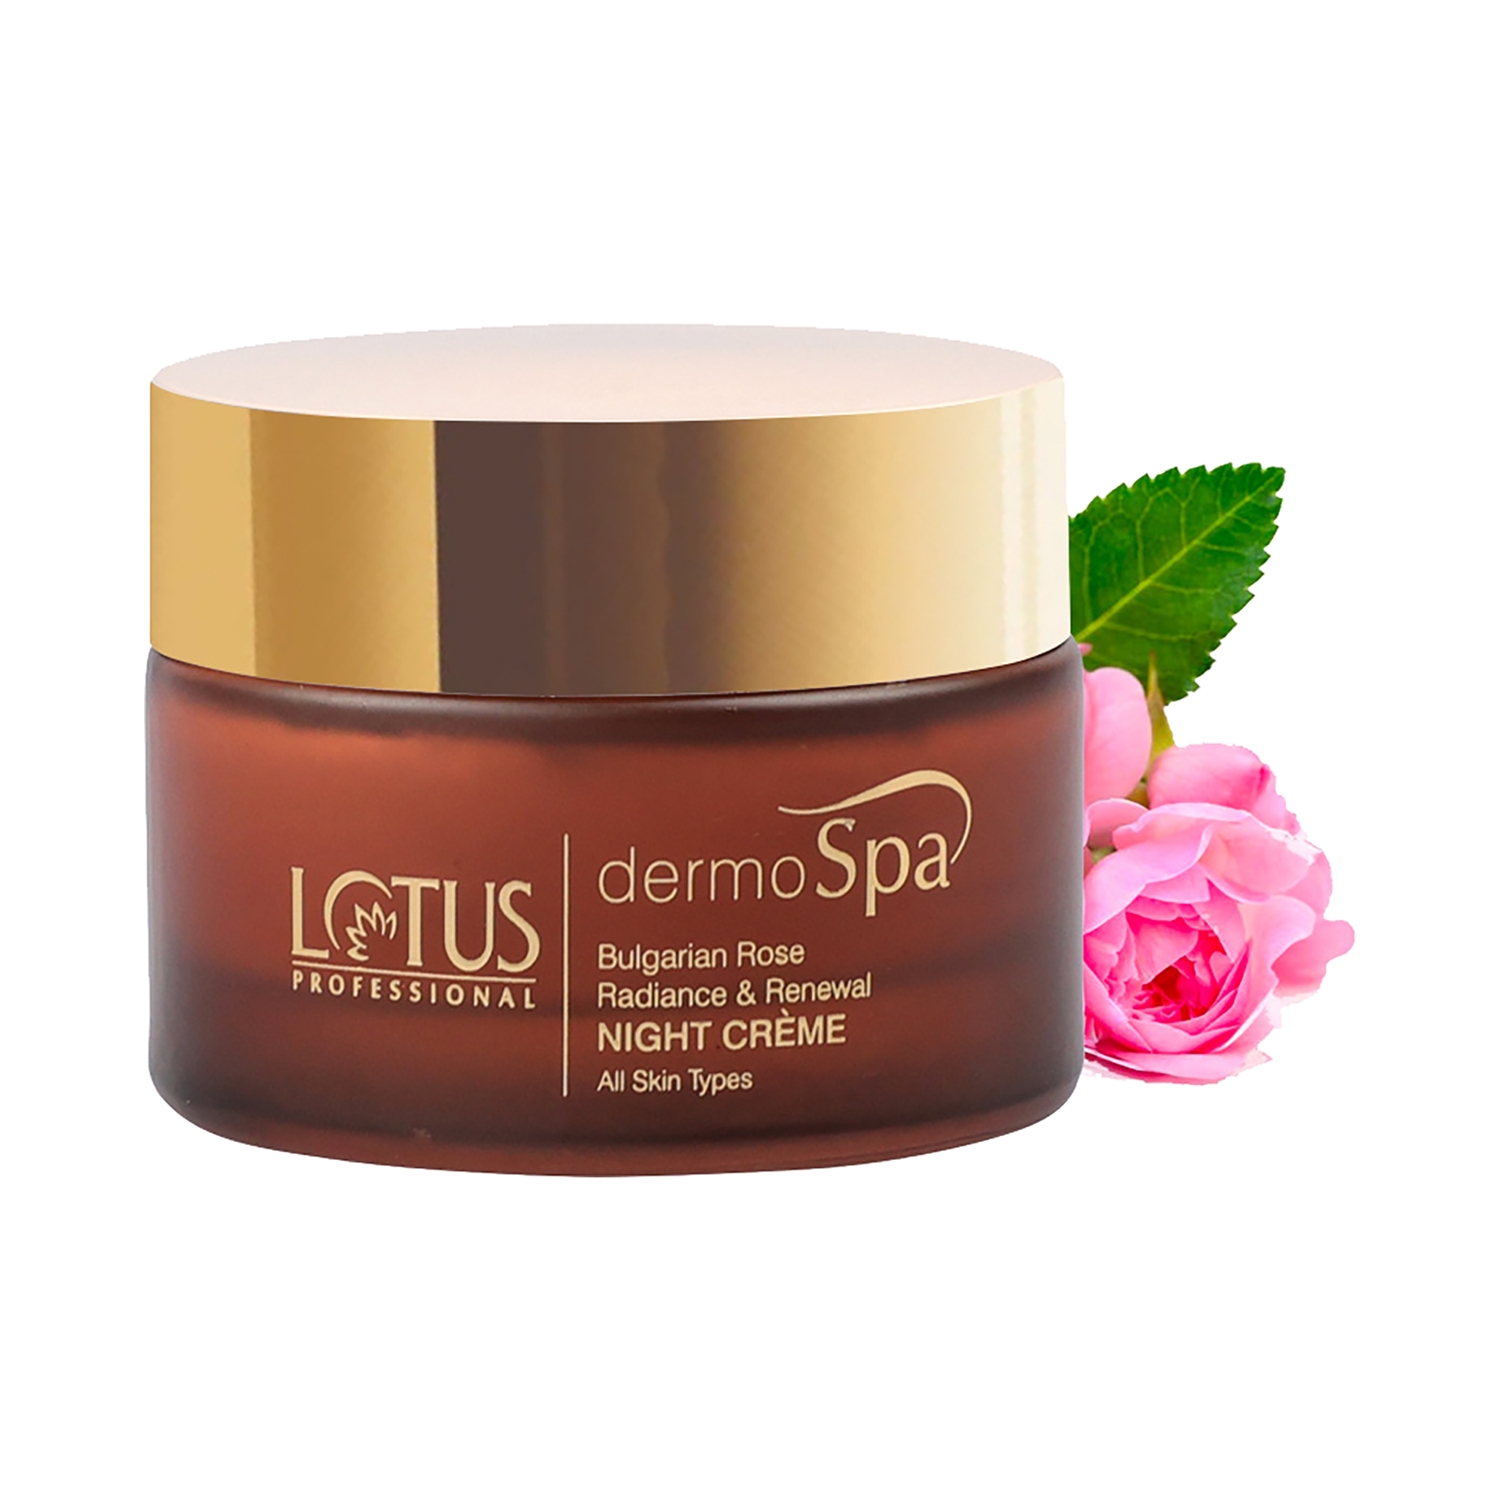 Lotus Professional | Lotus Professional Dermospa Bulgarian Rose Radiance & Renewal Night Cream (50g)